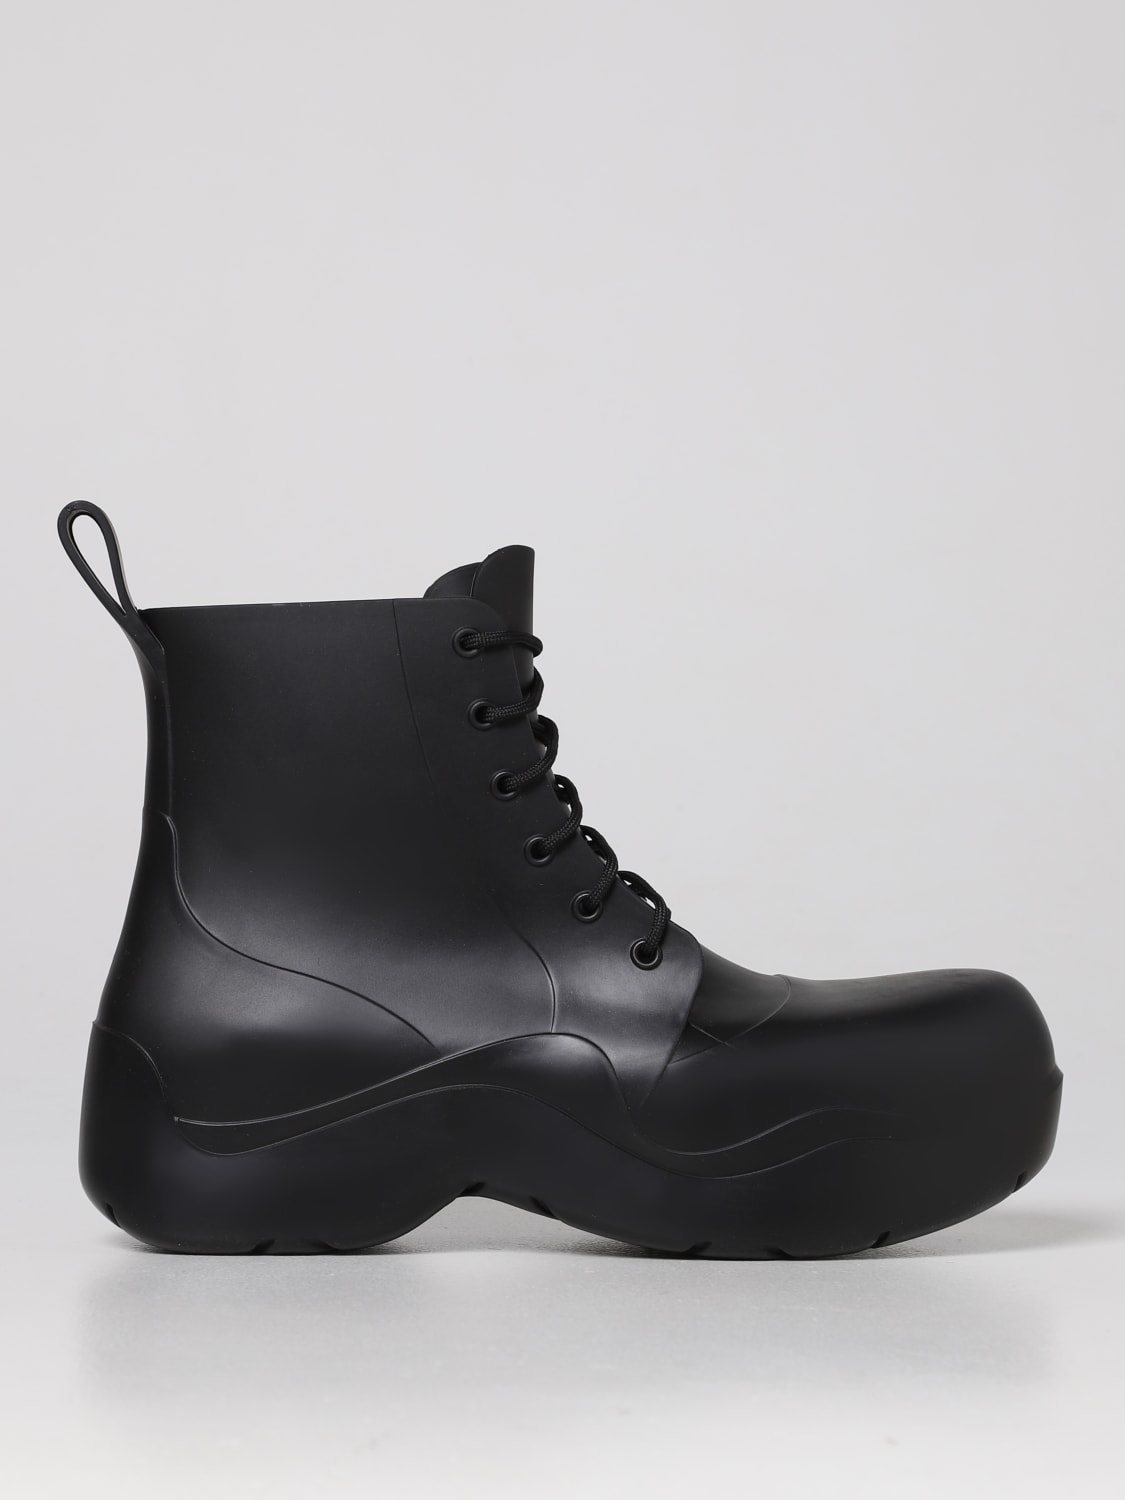 ボッテガヴェネタ メンズブーツ黒革靴 41 1/2 25.5cm〜26.0cmブーツ ...